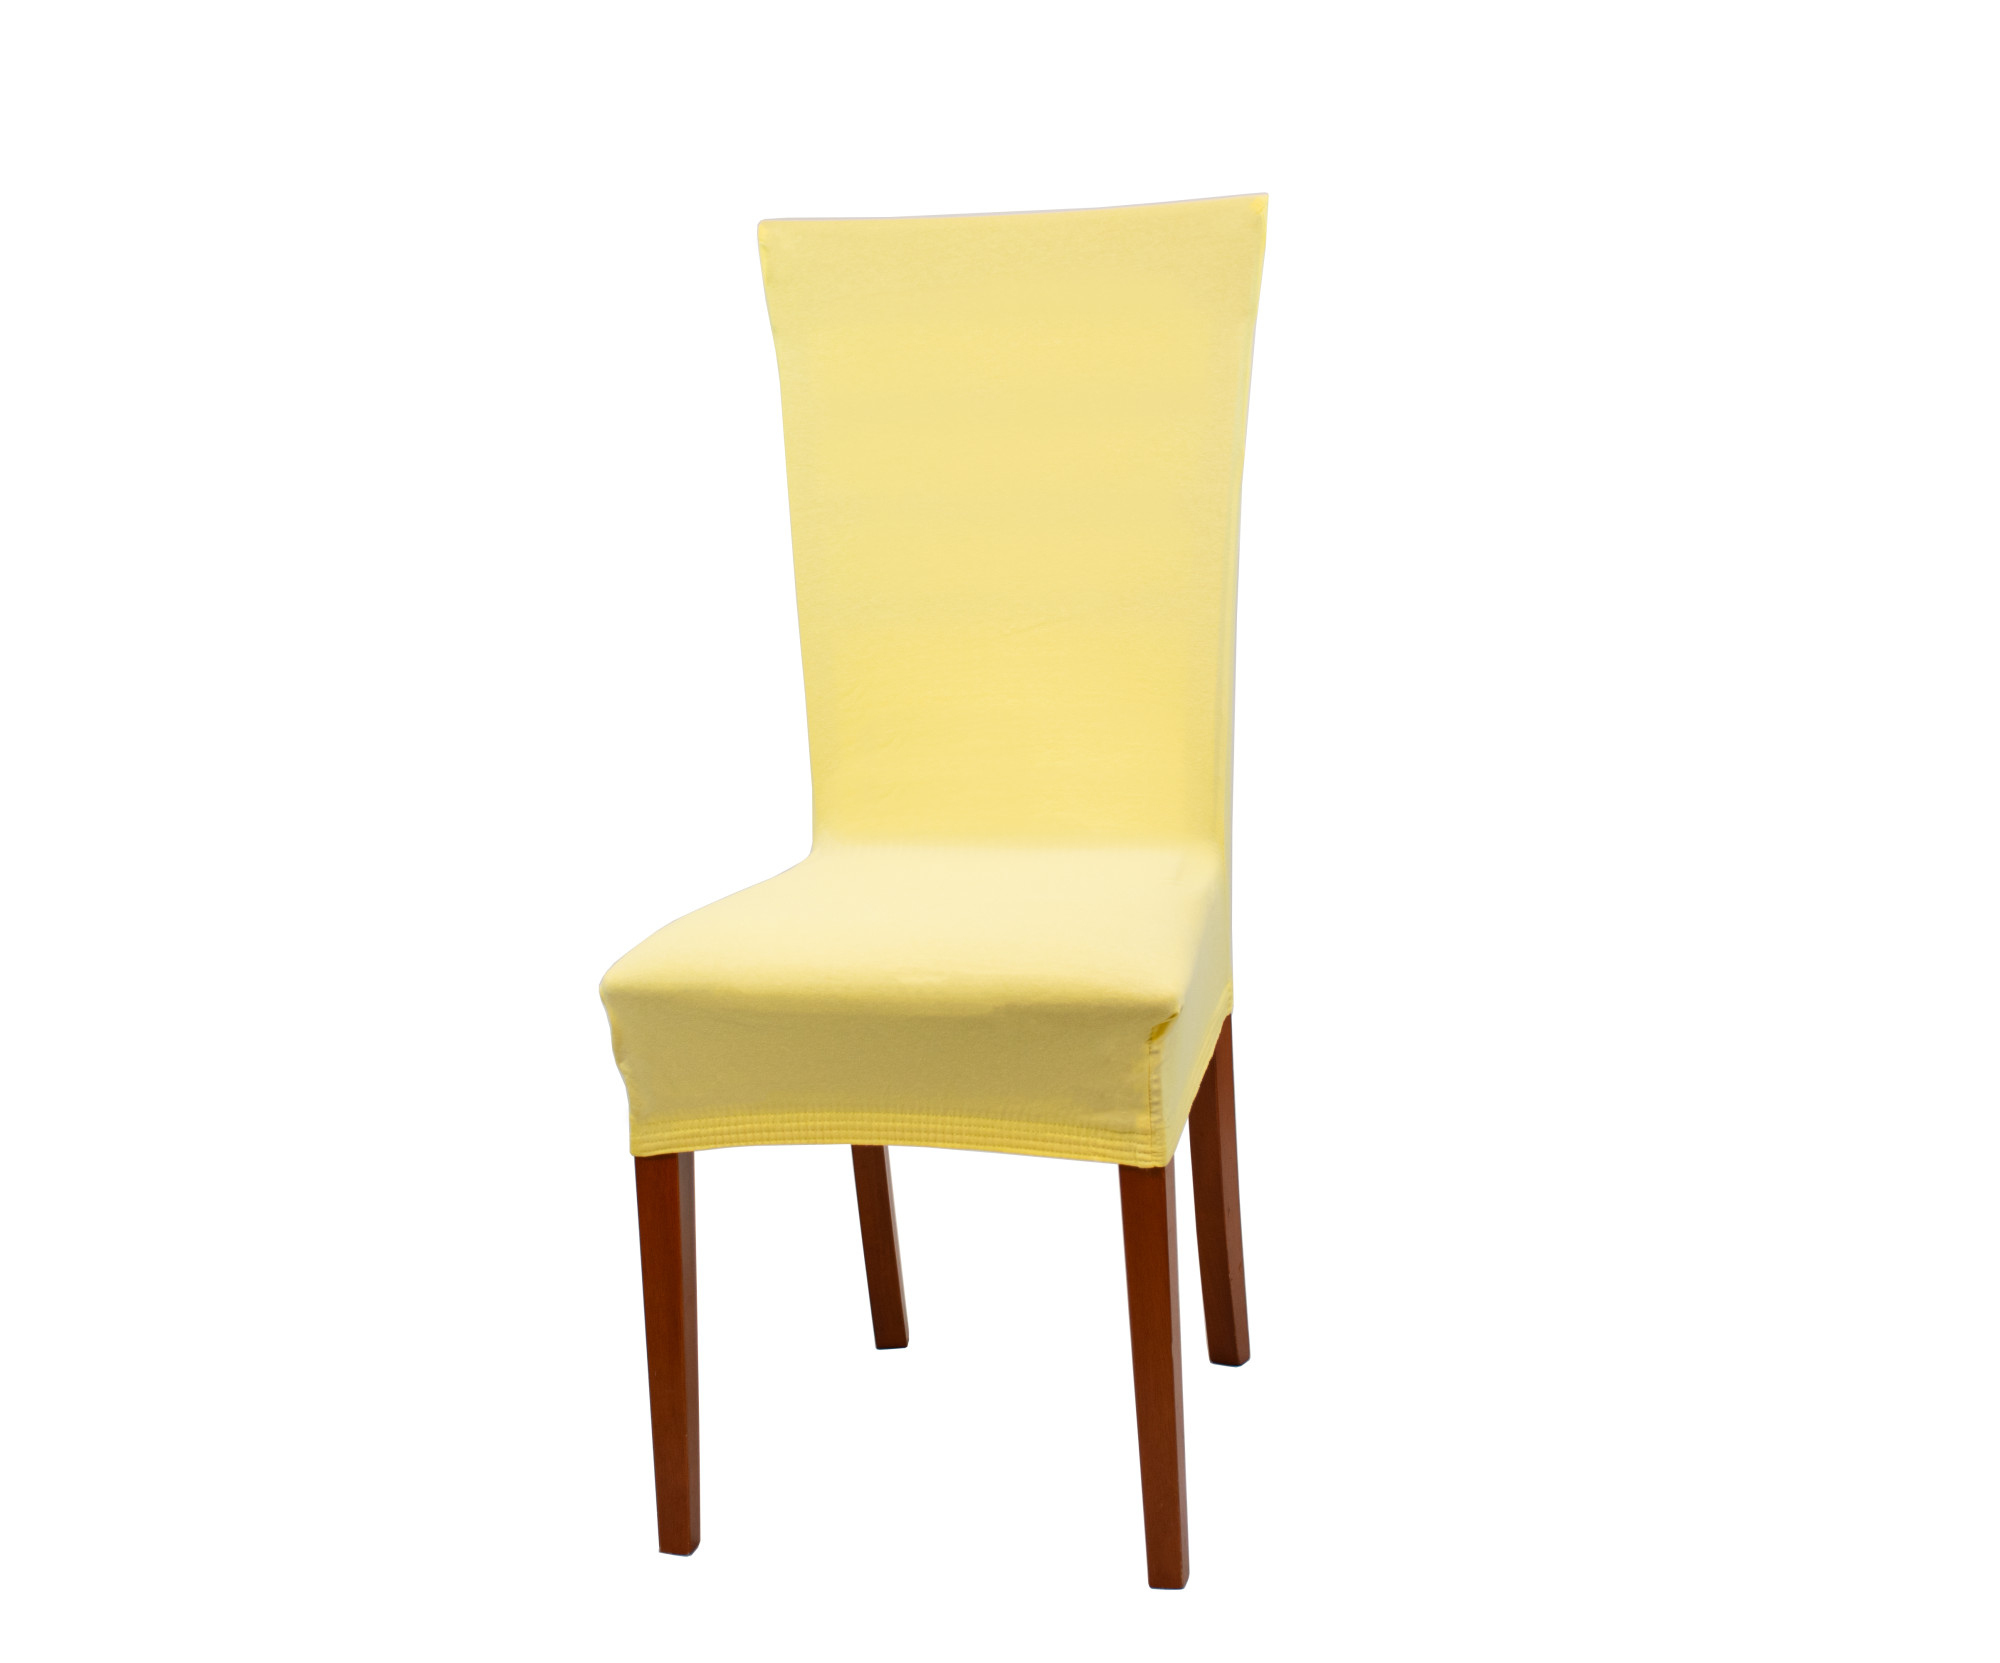 Univerzální elastický potah na židli Jersey - Žlutá